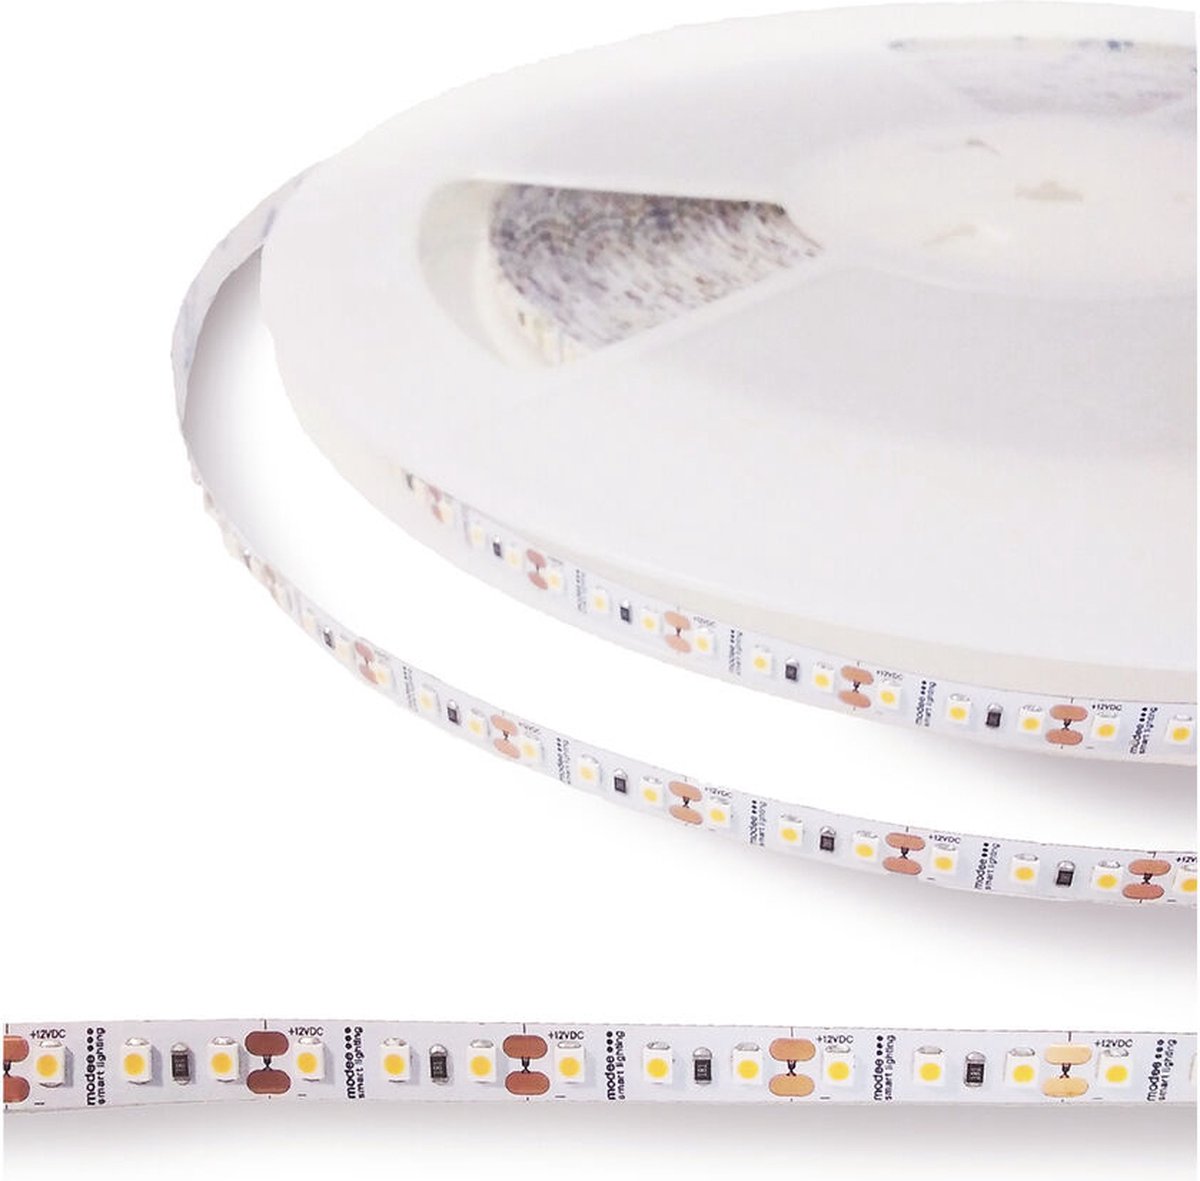 Modee Lighting - LED strip 5 meter - 12V 9.6W 120 leds p/m - 4000K helder wit licht -2 jaar garantie